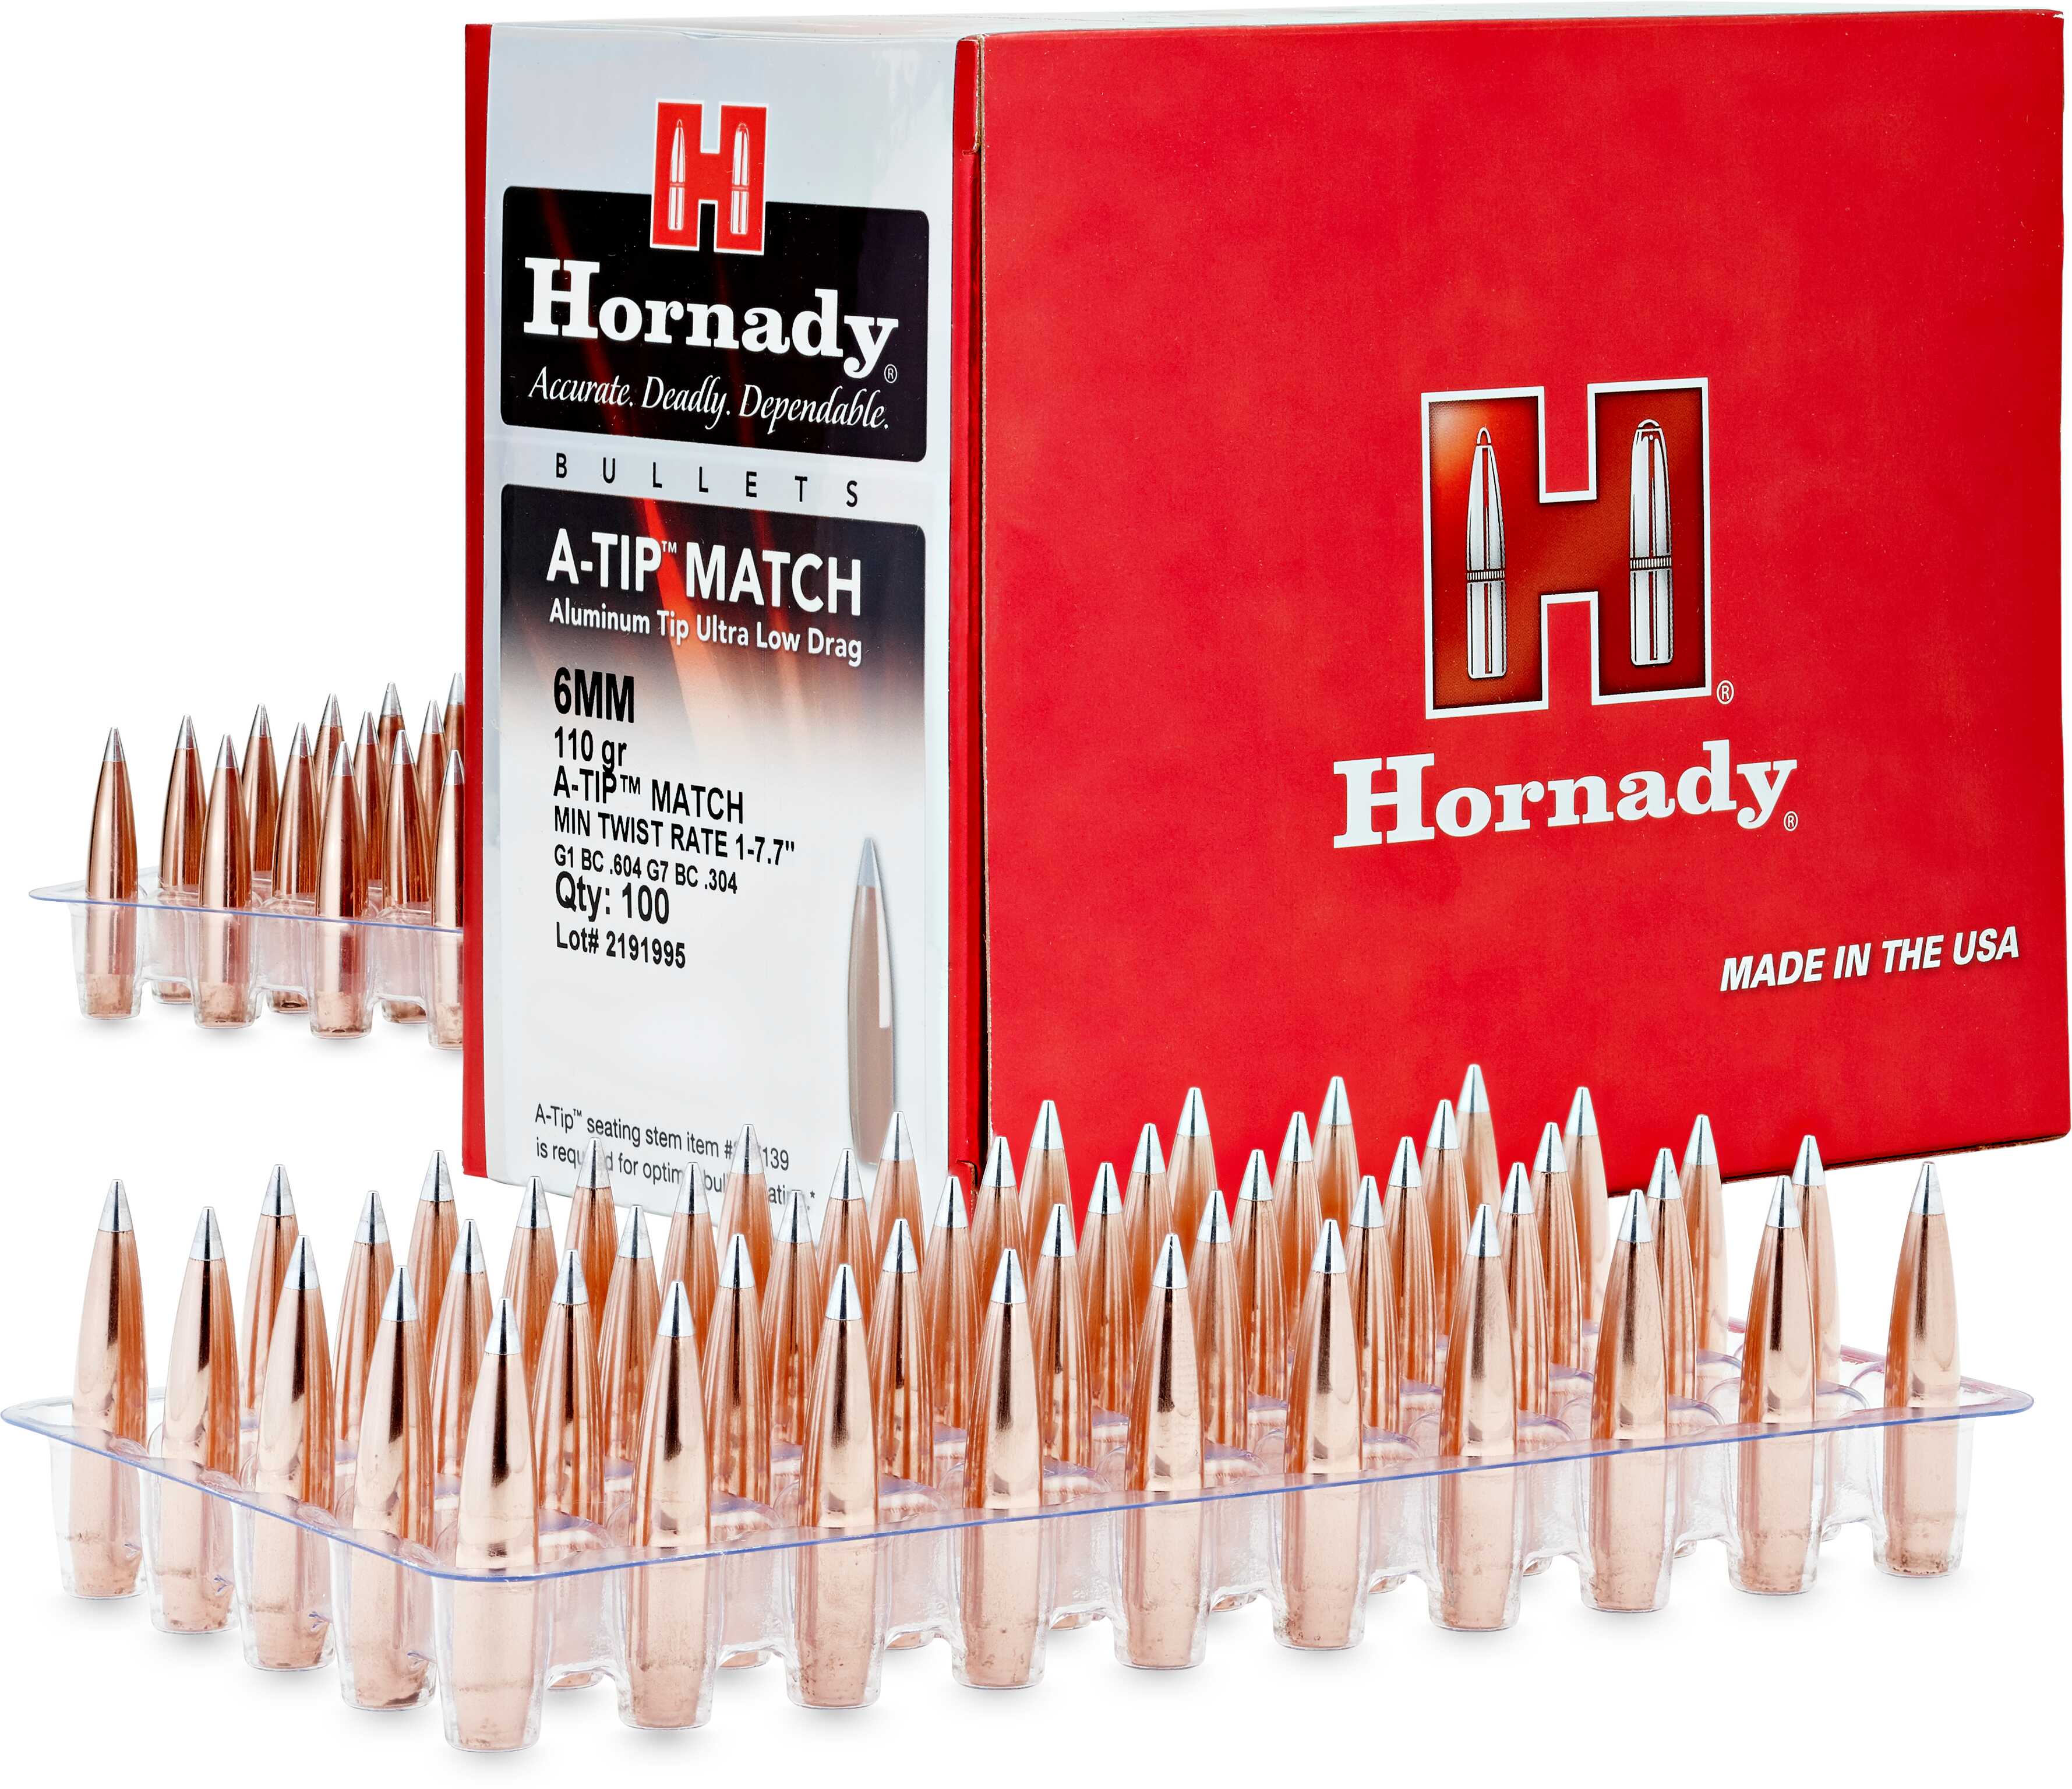 Hornady Aluminum Tip Rifle Bullets 7mm .284" 190 Gr A-Tip Match 100/ct